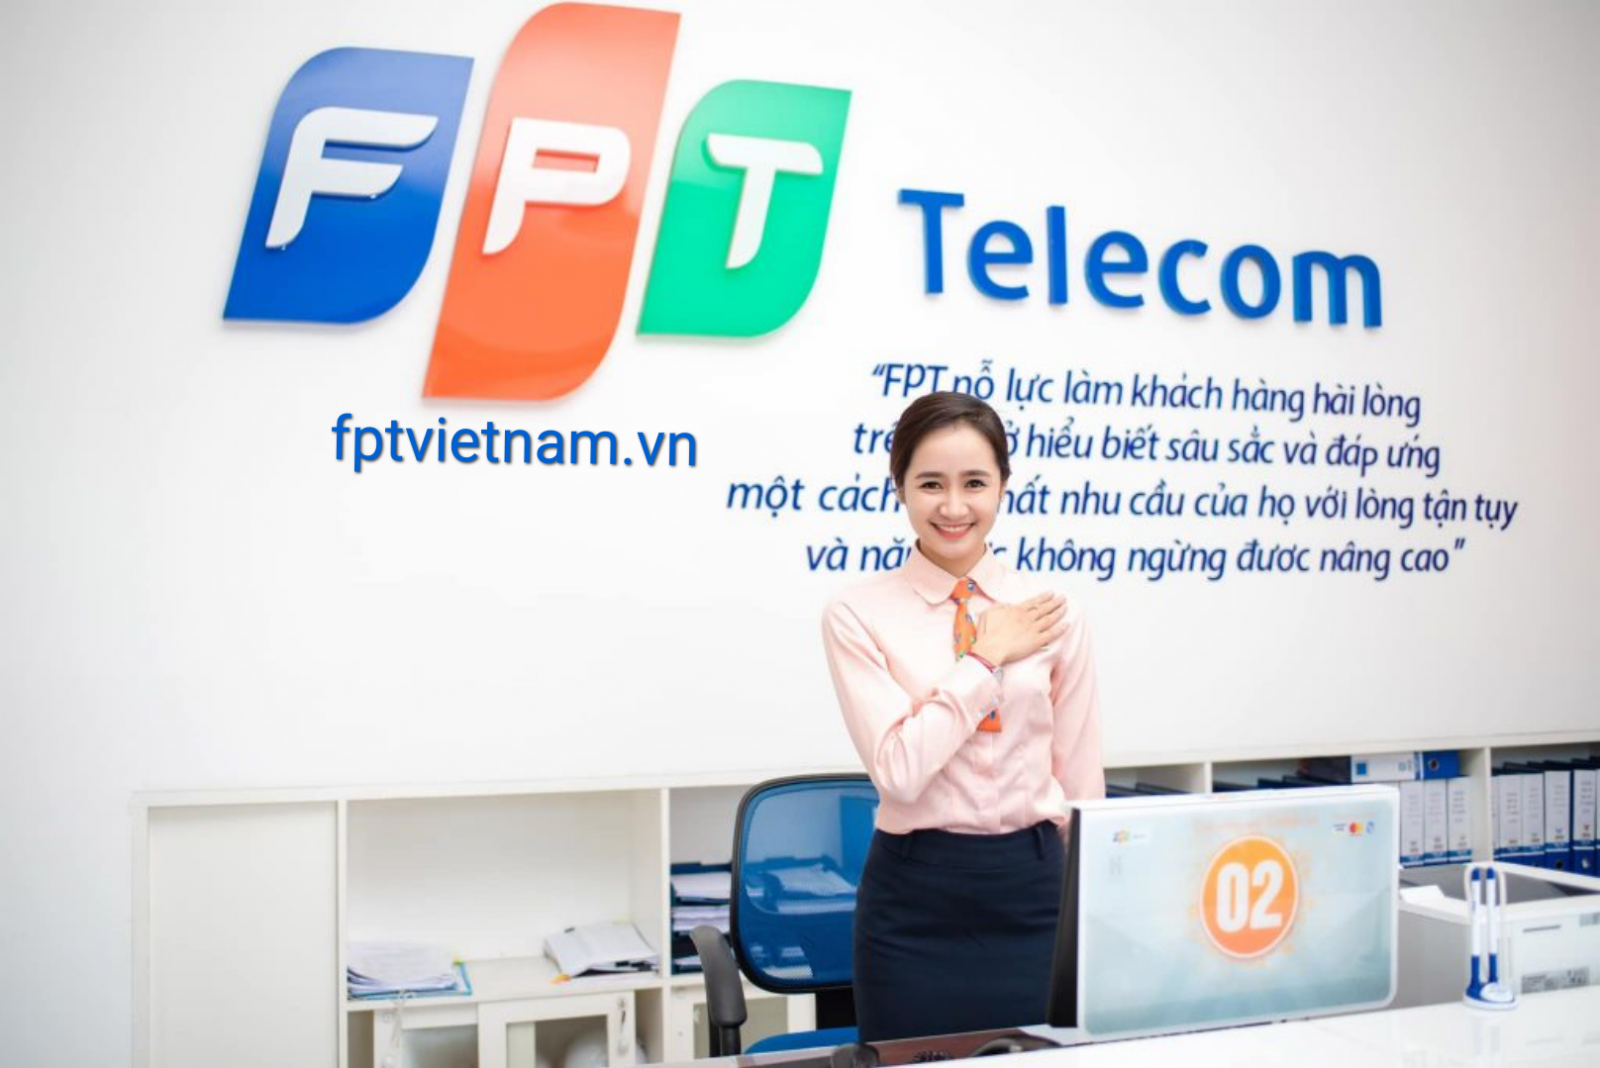 dịch vụ fpt telecom Cao Bằng